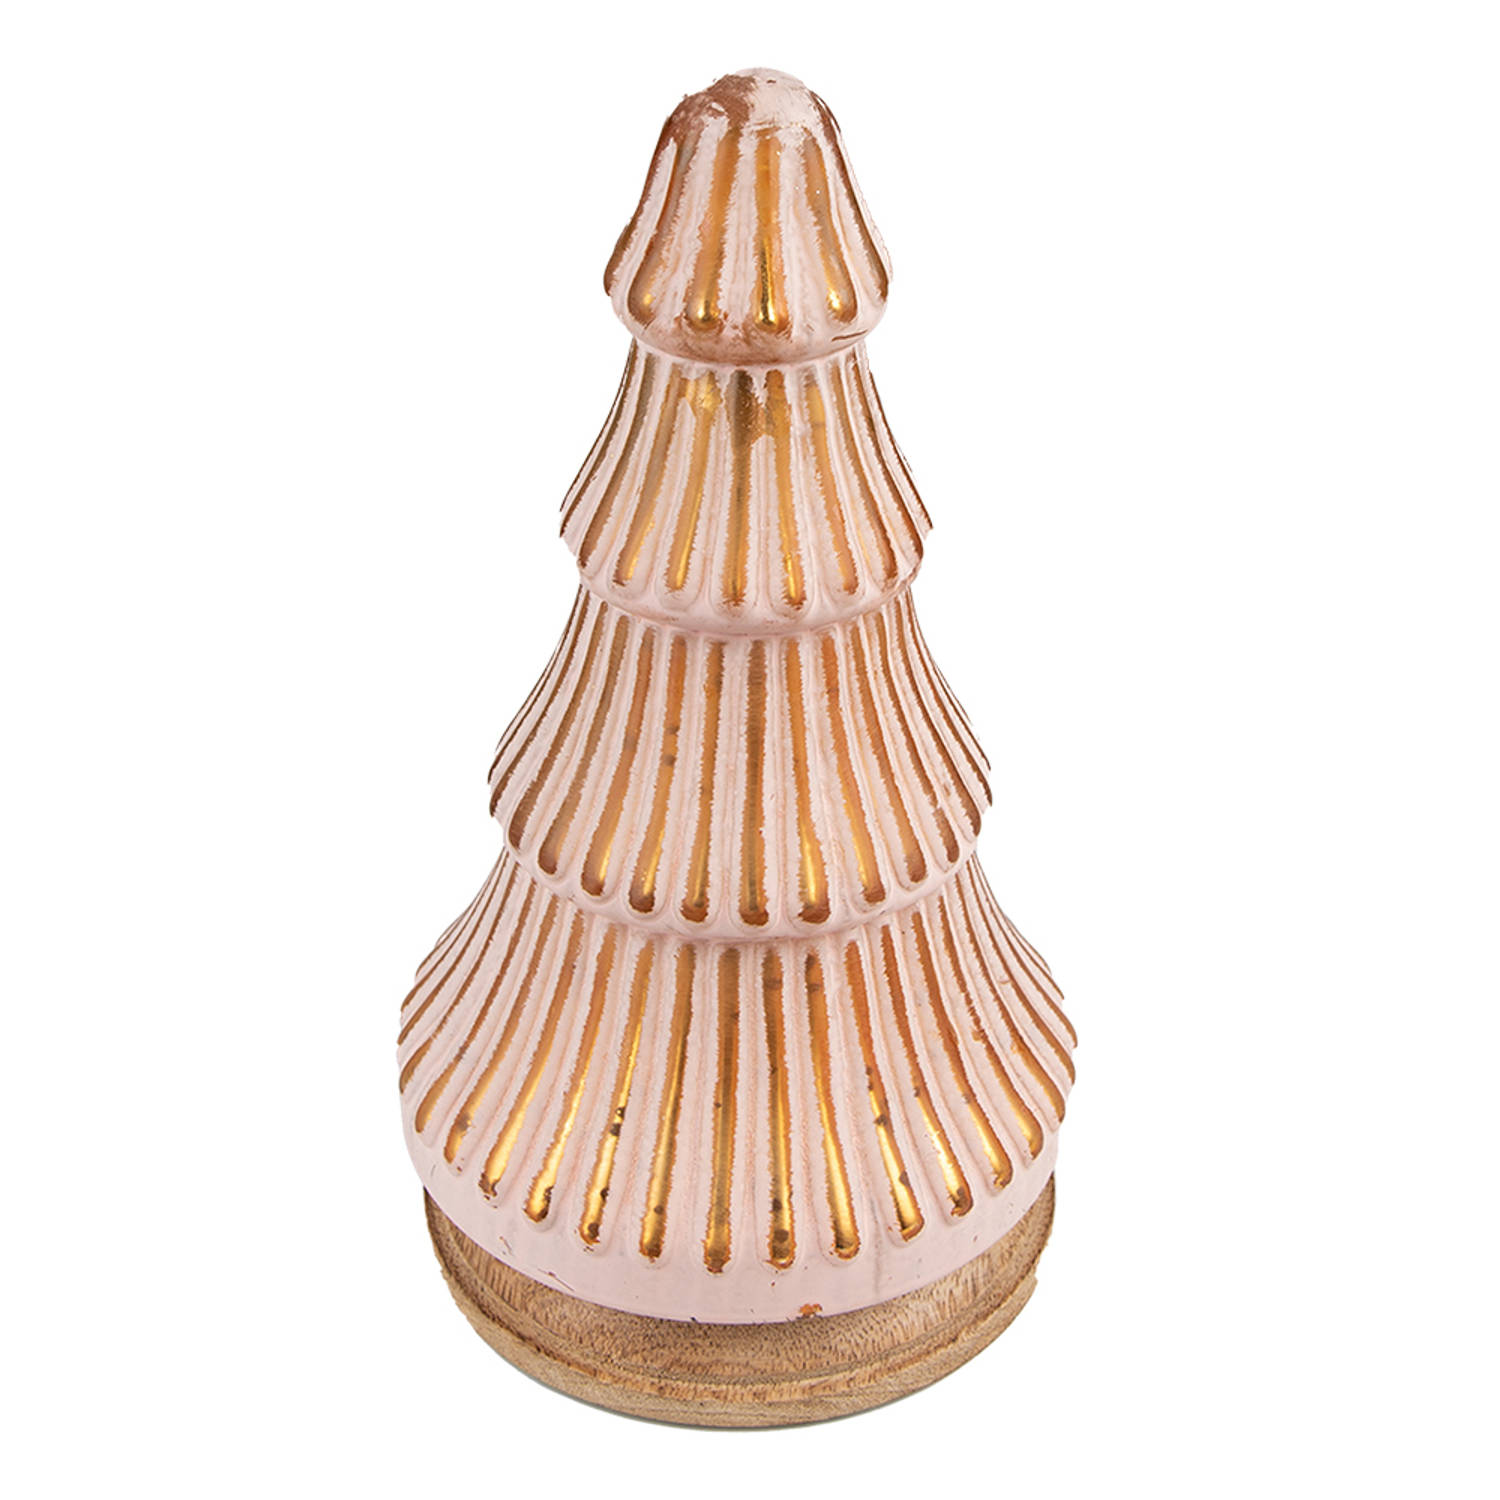 HAES DECO - Decoratieve Kerstboom - Formaat Ø 13x24 cm - Kleur Roze - Materiaal Hout / Glas - Kerstversiering, Kerstdecoratie